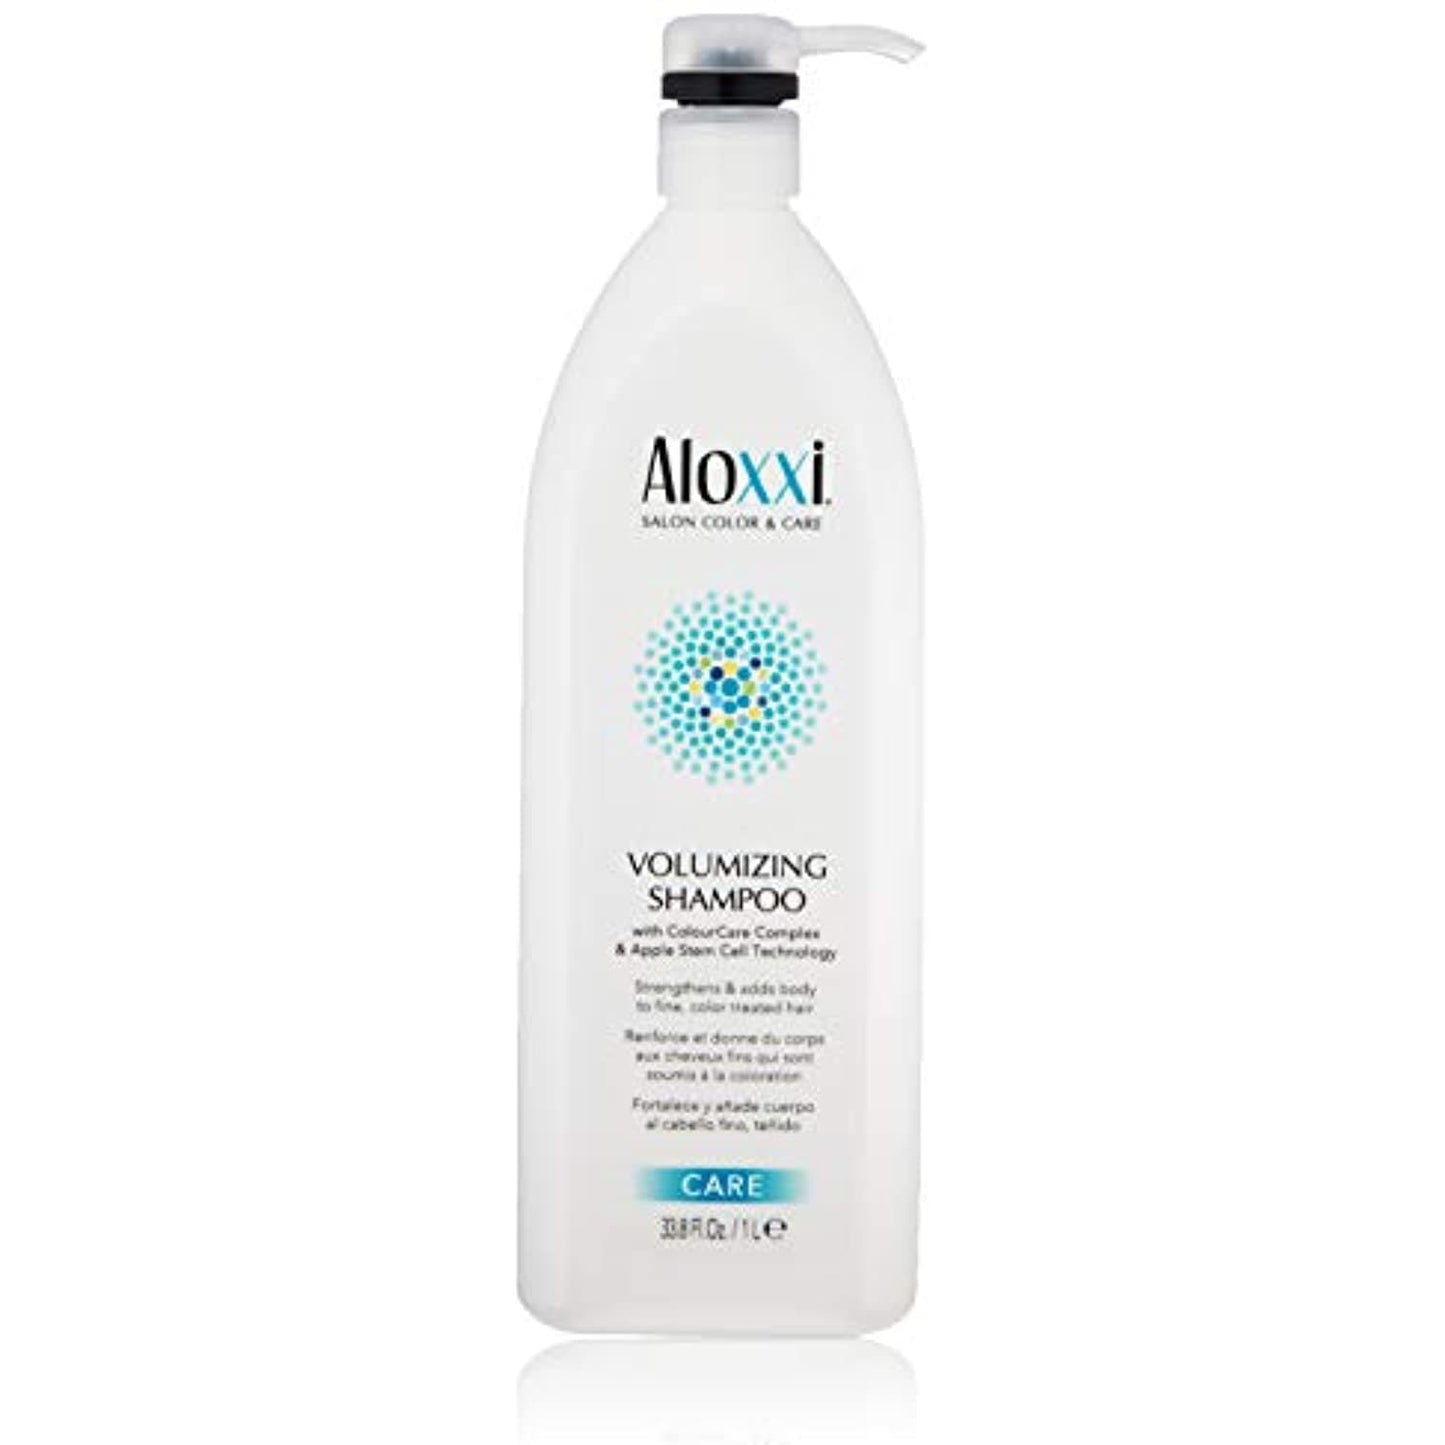 Aloxxi Colourcare Volumizing and Strengthening Shampoo